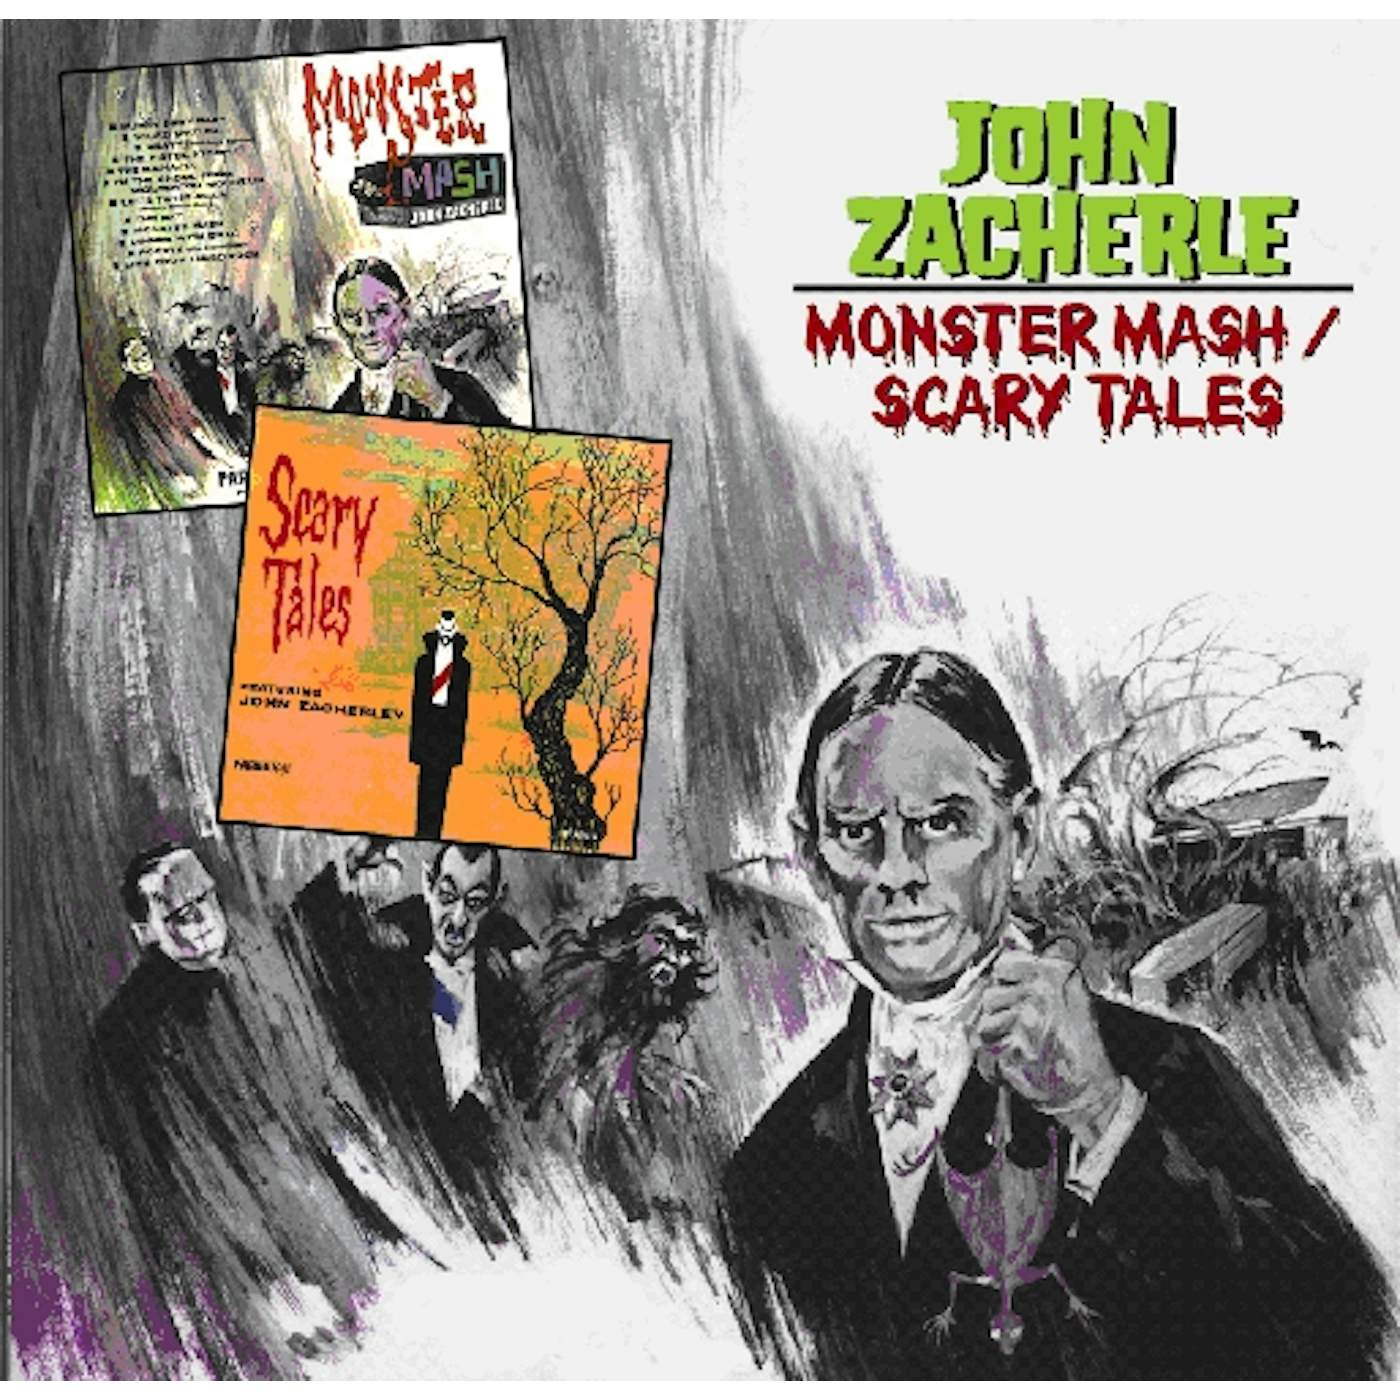 John Zacherle MONSTER MASH / SCARY TALES CD